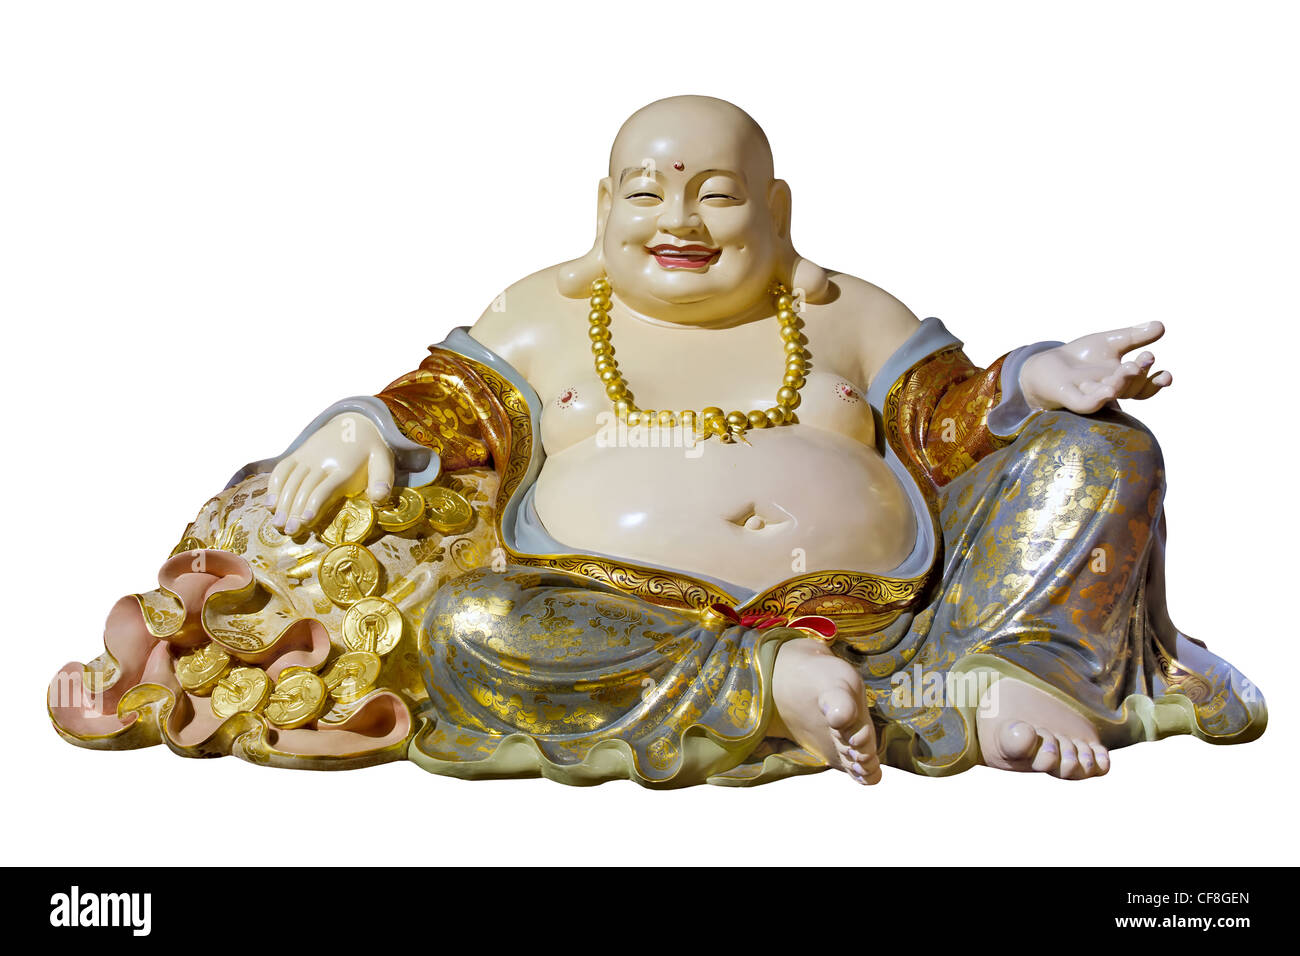 Dicken Bauch Maitreya Tuch Tasche Mönch Buddhastatue Isolated on White Background Stockfoto